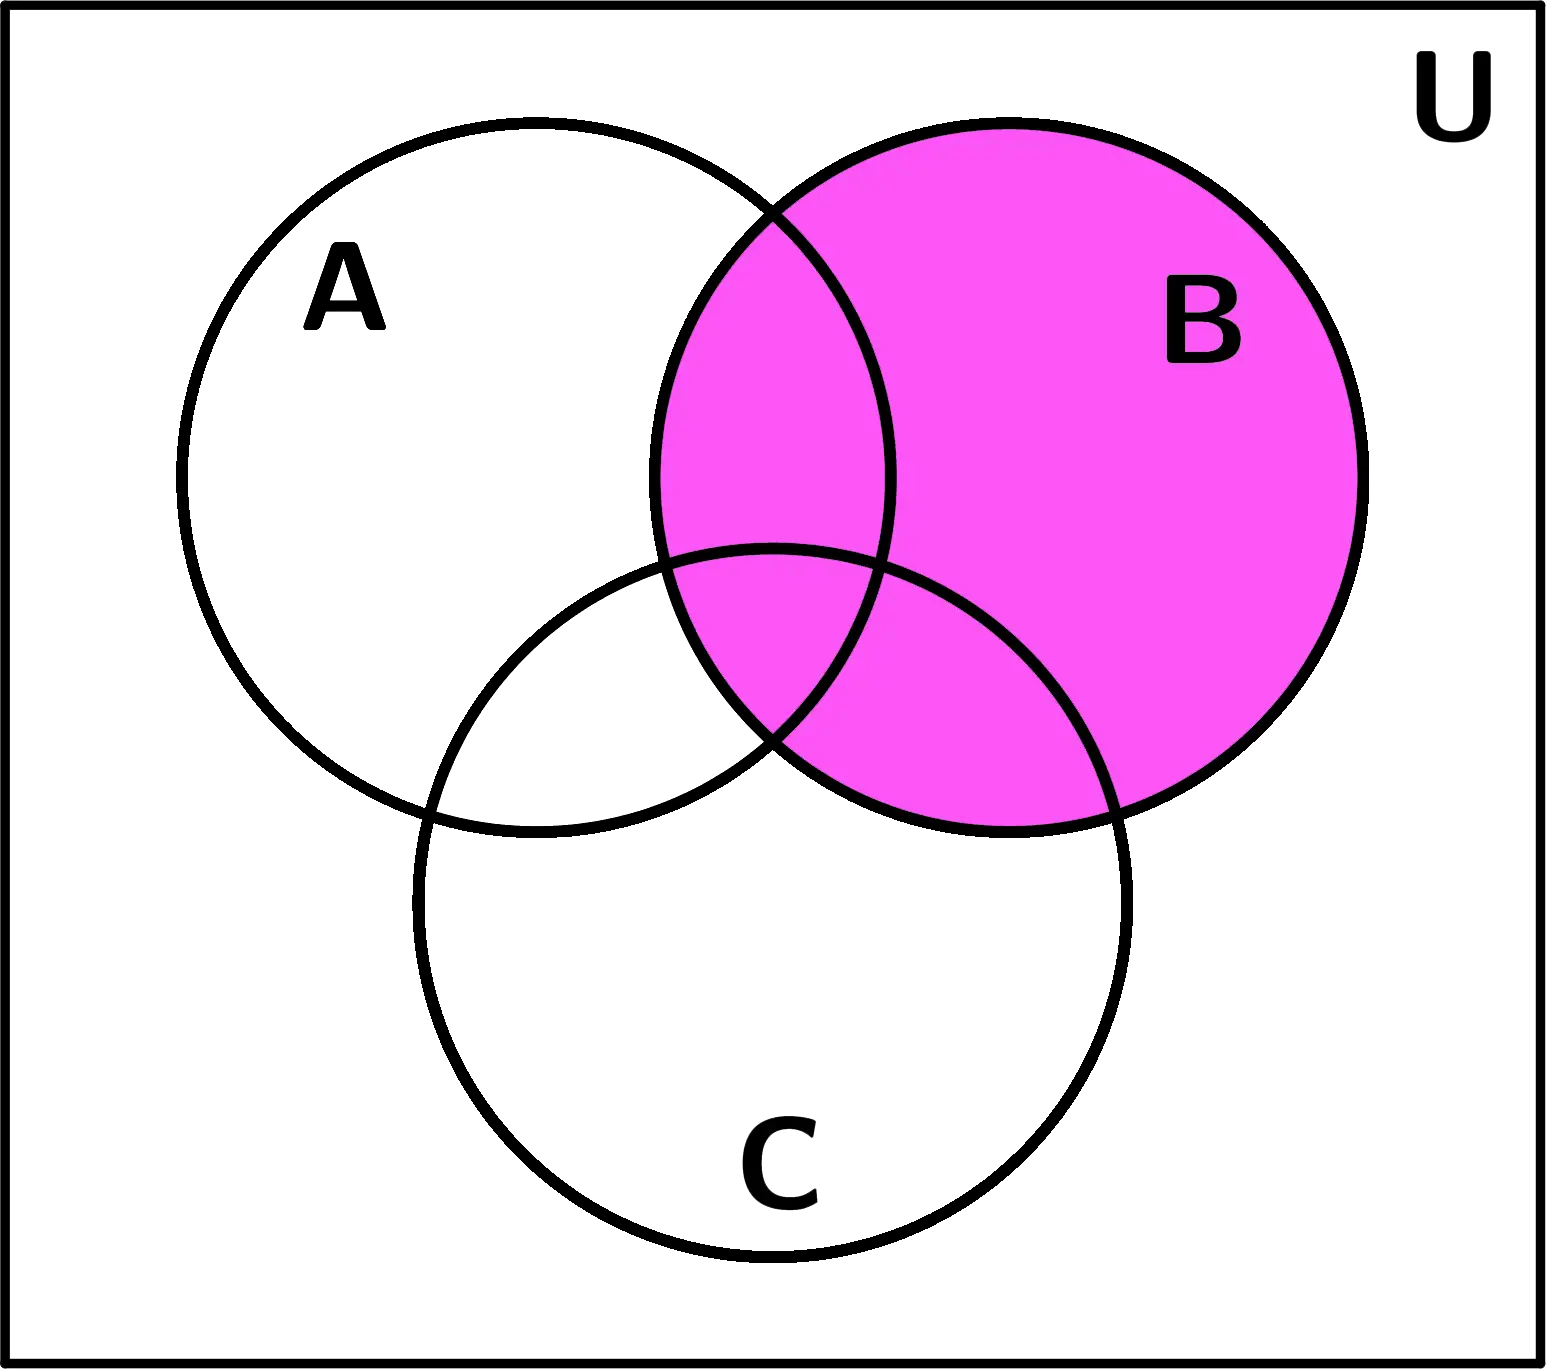 ejemplos-de-diagramas-de-Venn-conjunto-B